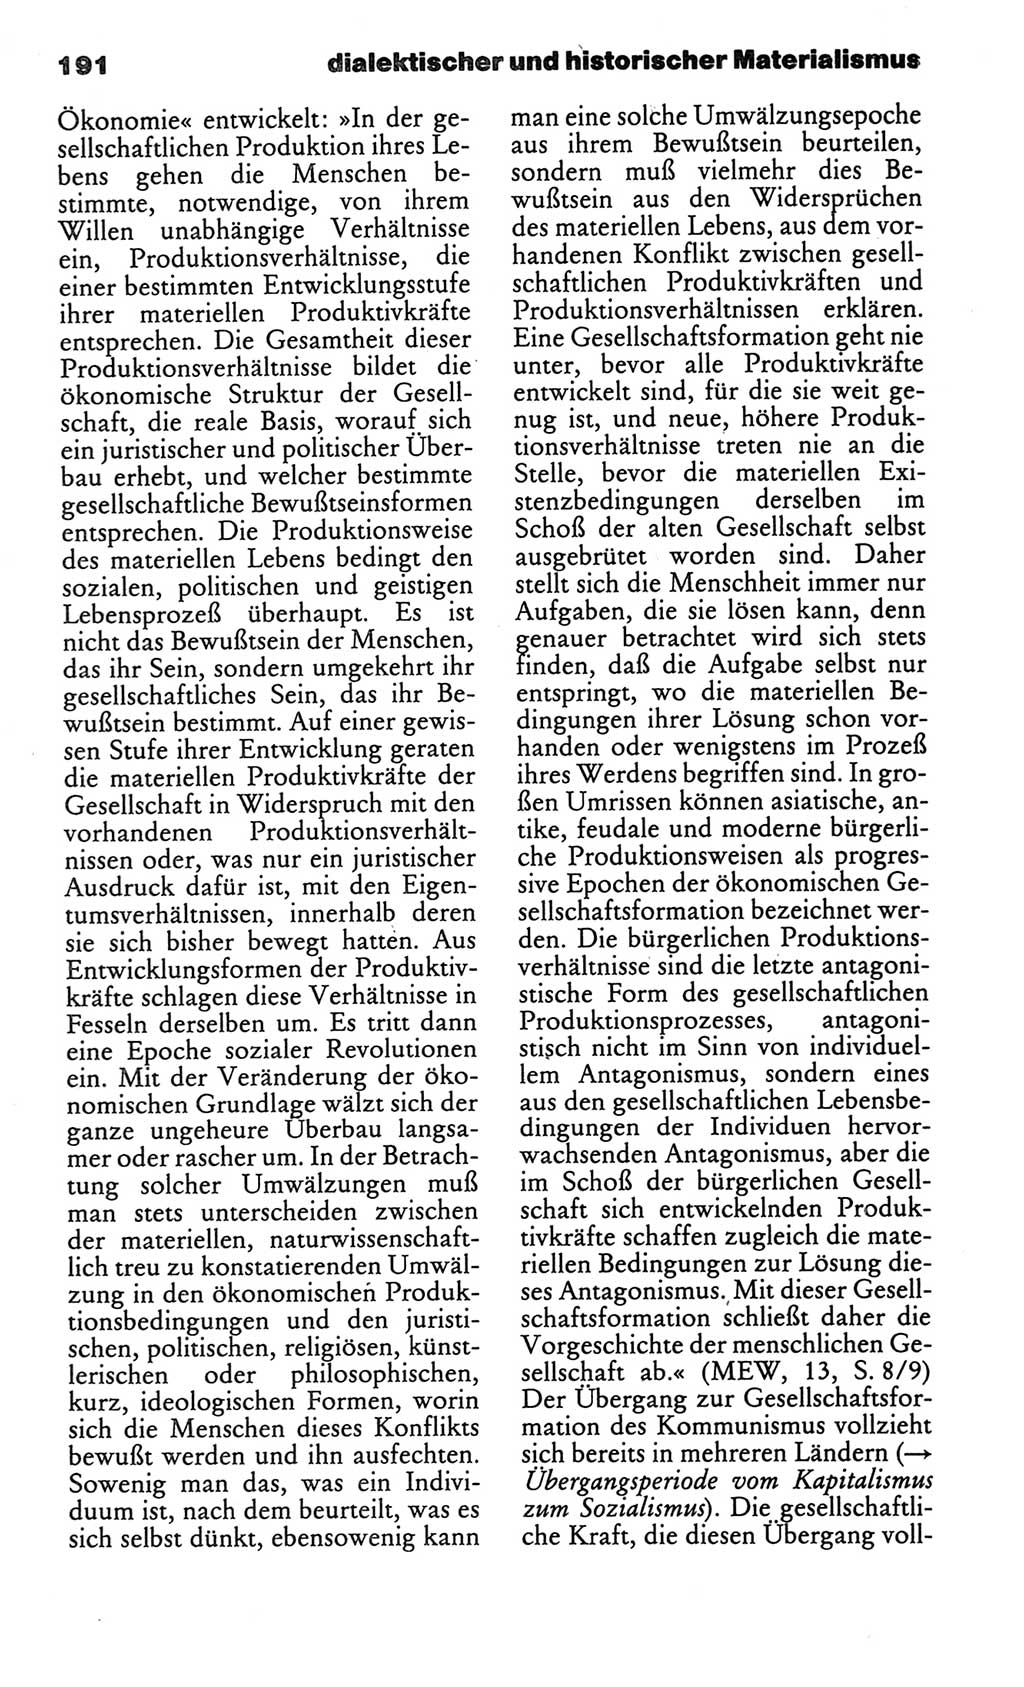 Kleines politisches Wörterbuch [Deutsche Demokratische Republik (DDR)] 1986, Seite 191 (Kl. pol. Wb. DDR 1986, S. 191)